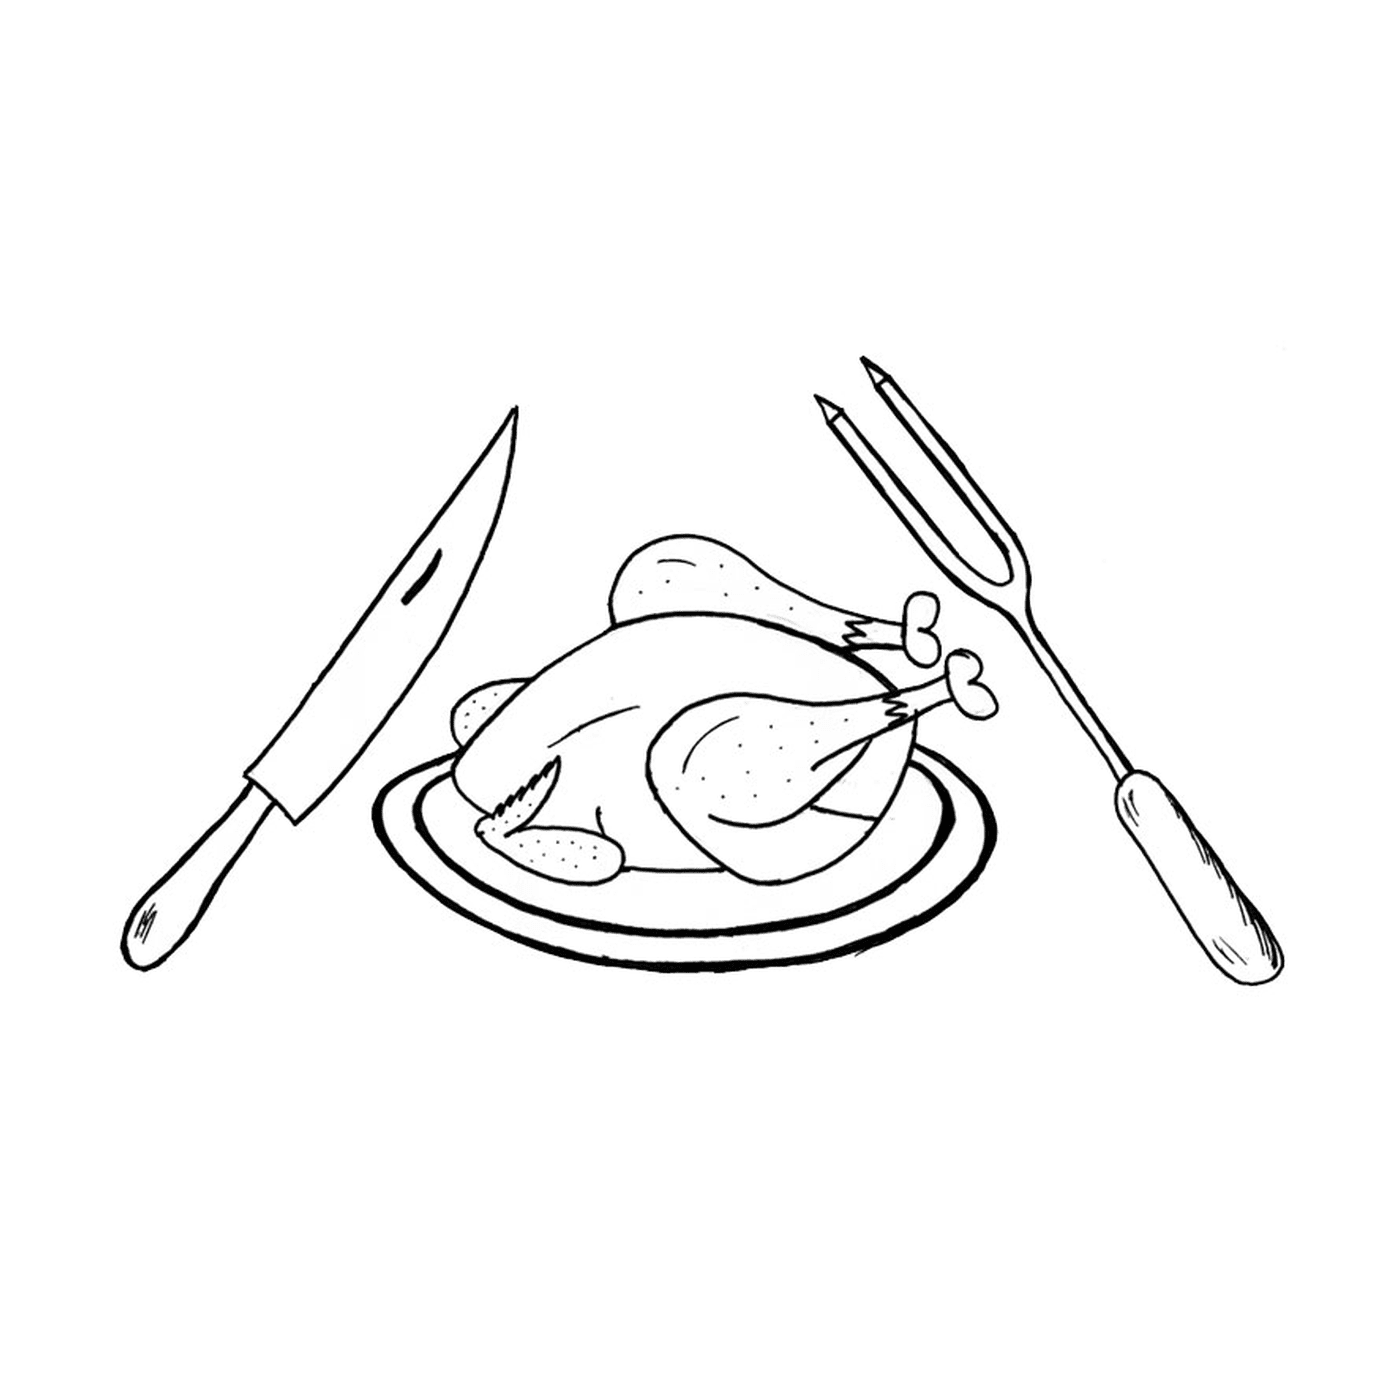  Uma galinha em um prato com uma faca, um garfo e um garfo 